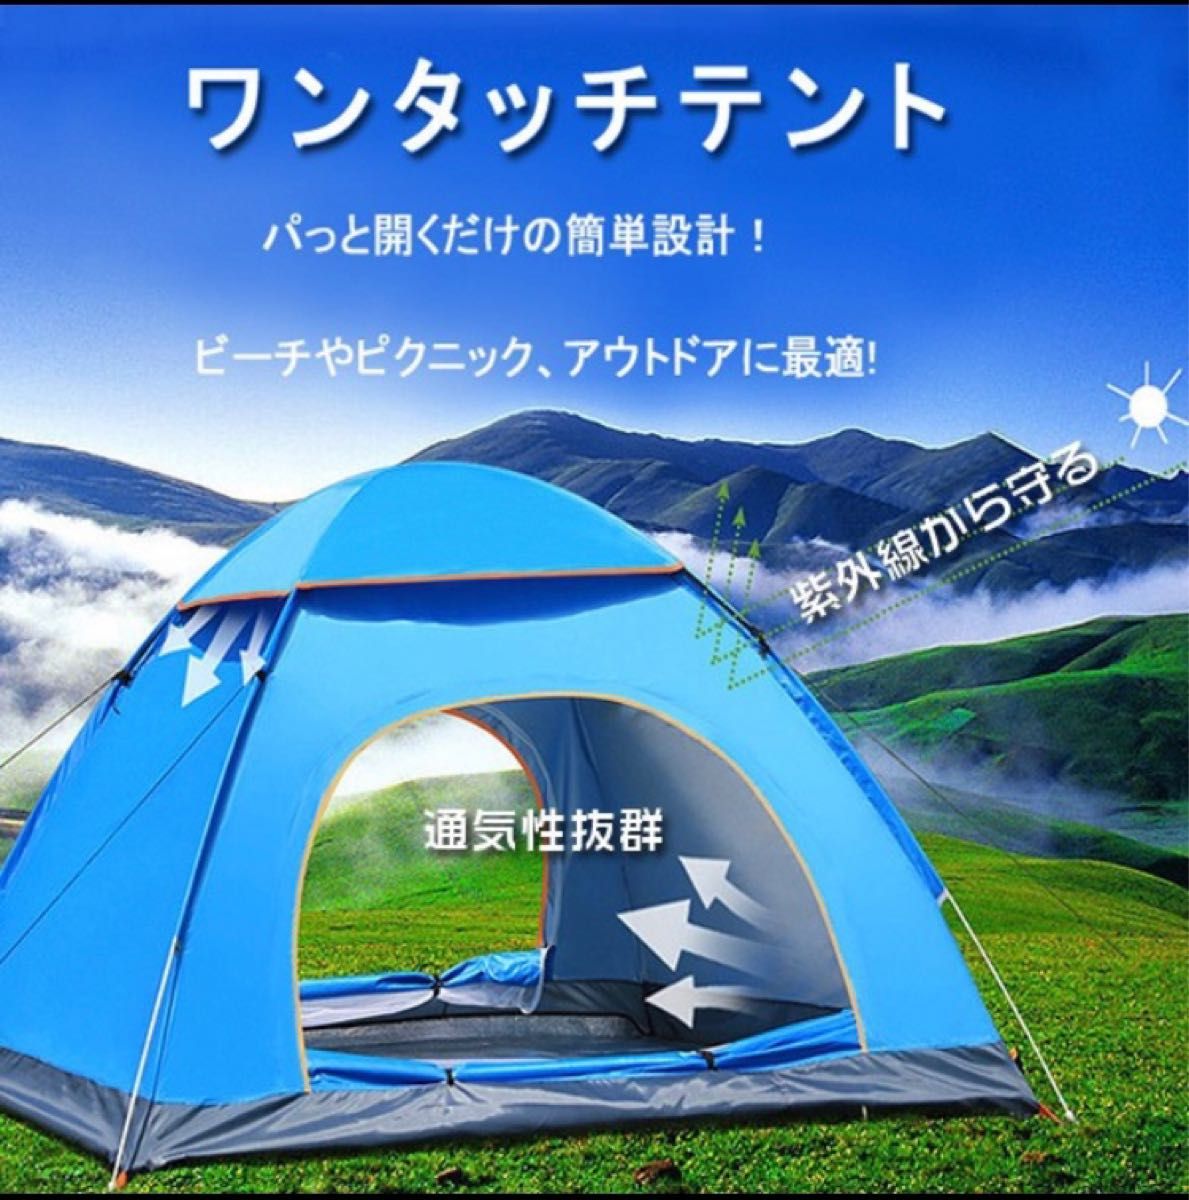 ワンタッチテント 2-3人用 ブルー キャンプ アウトドア用品 自動 ドームテント 簡単 キャンプテント 軽量 折りたたみ 54